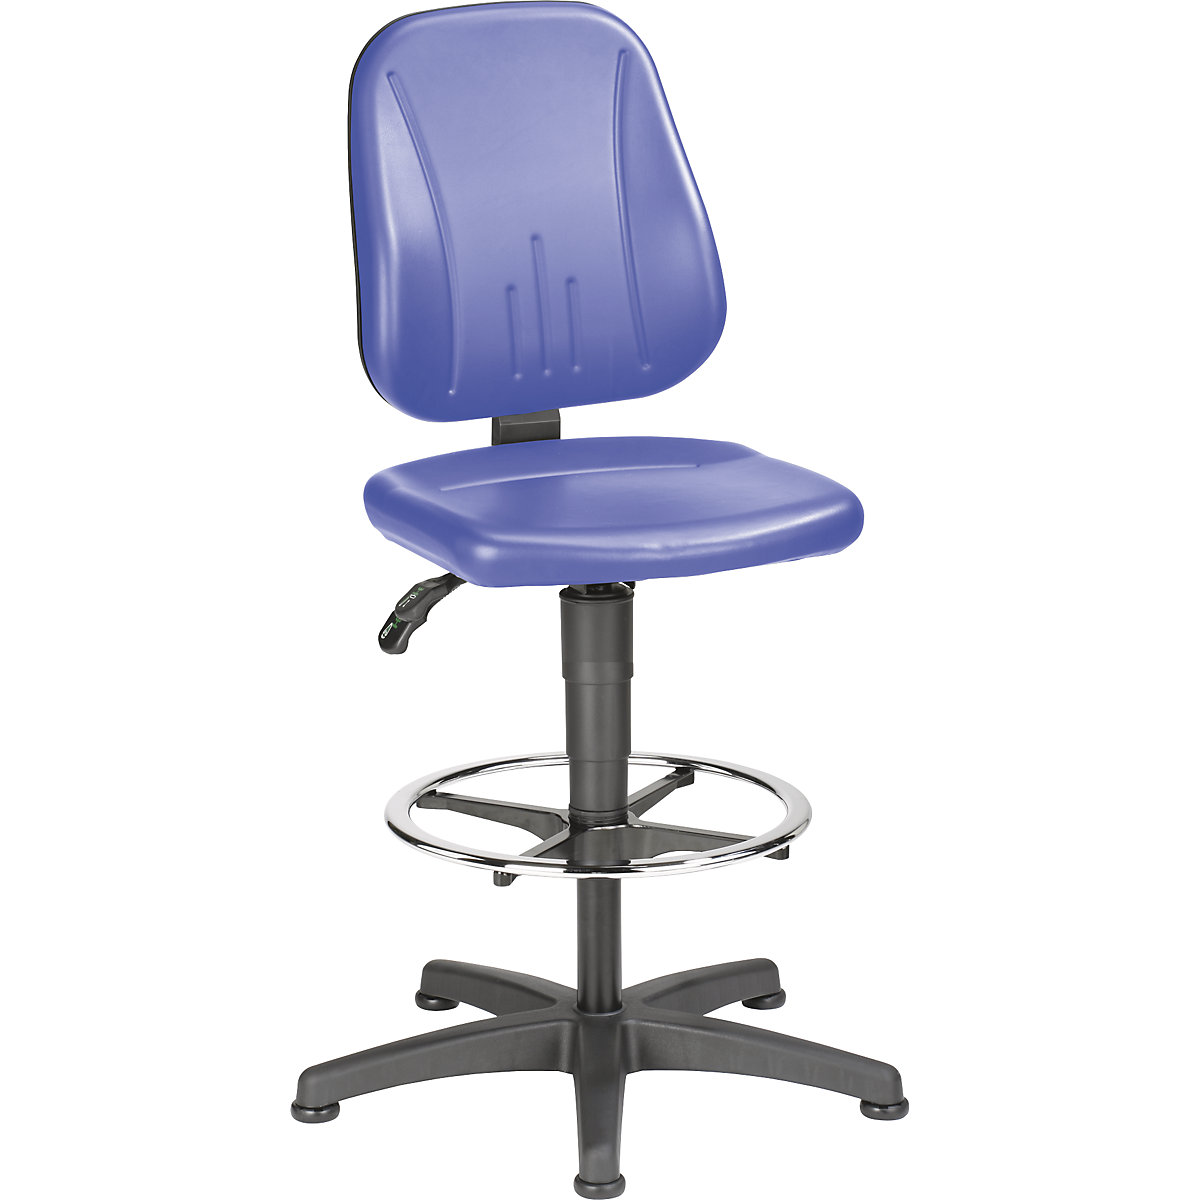 Pracovní otočná židle – bimos, s přestavováním výšky plynovým pístem, koženkový potah, modrá, s podlahovými patkami a nožním kruhem-19